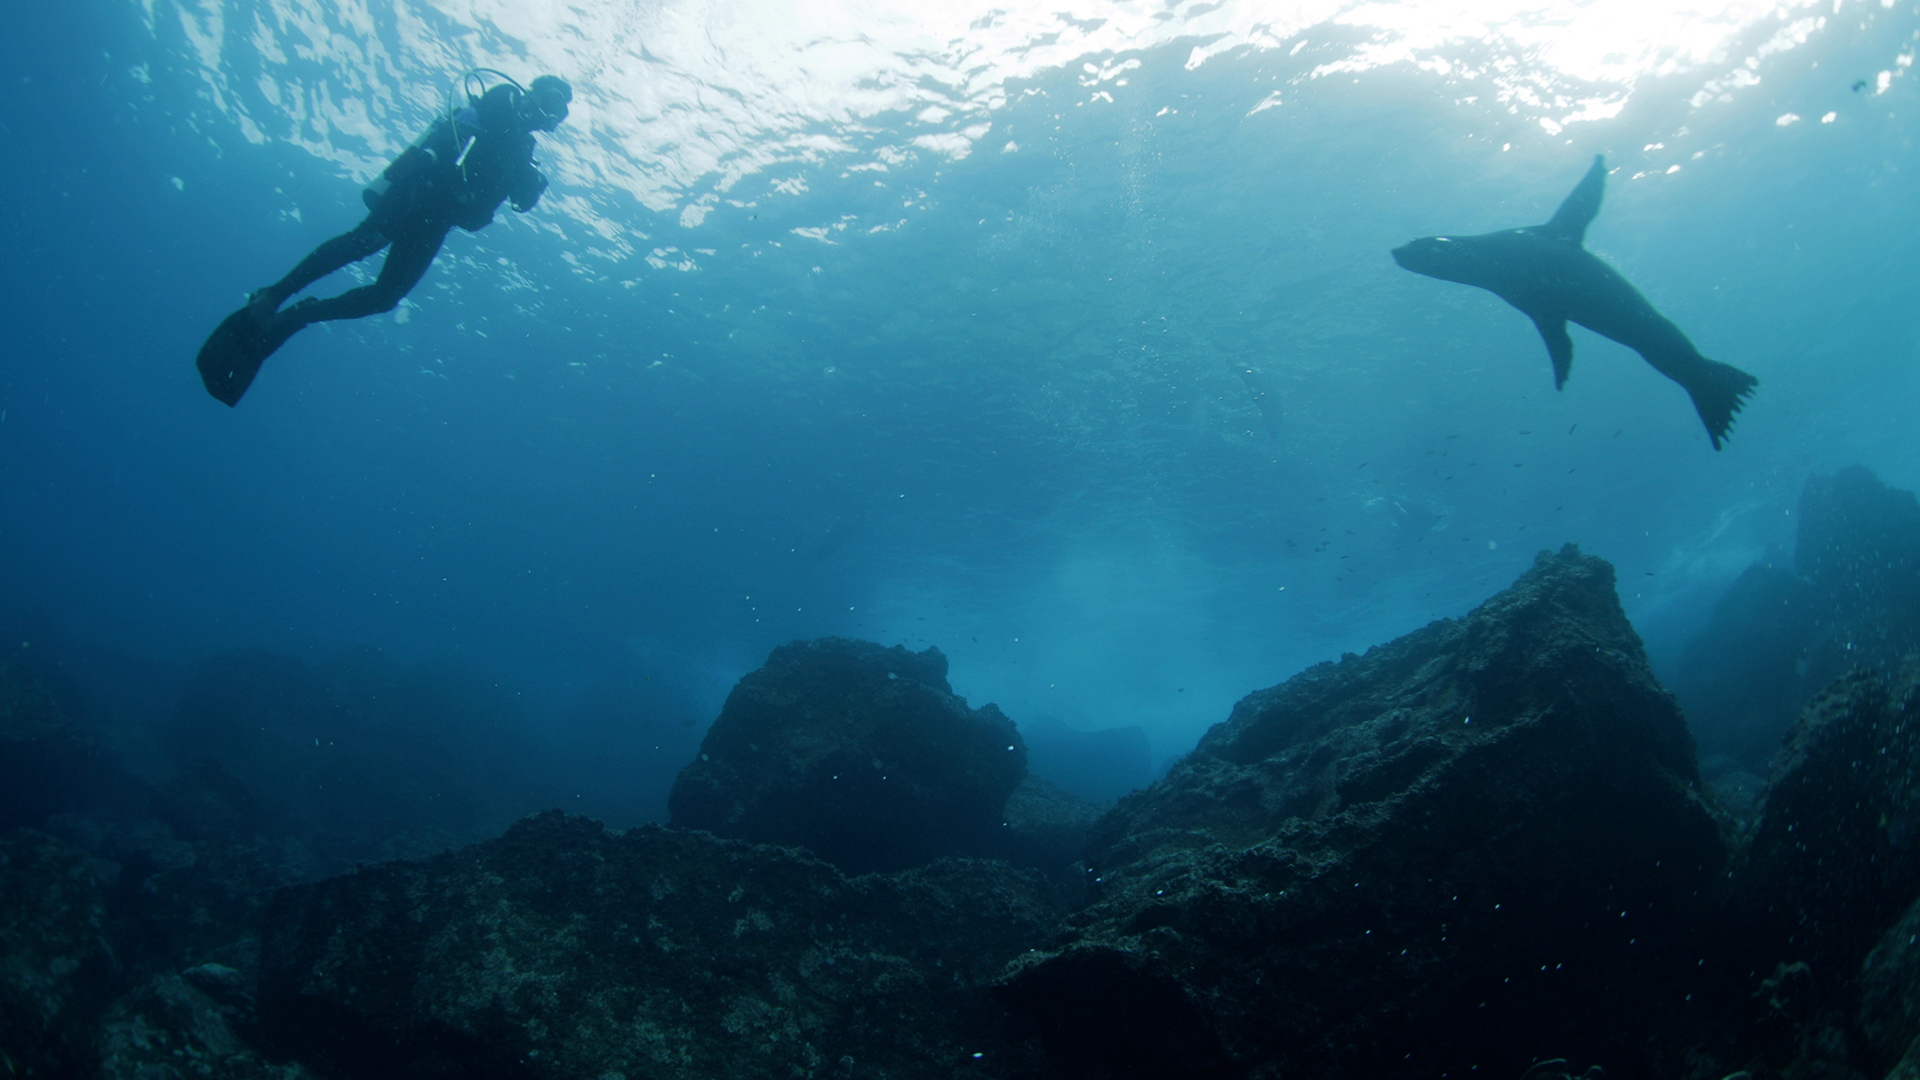 غواص يسبح إلى جوار فقمة في جزر غالاباغوس. هذه الصورة... [Photo of the day - يوليو 2022]